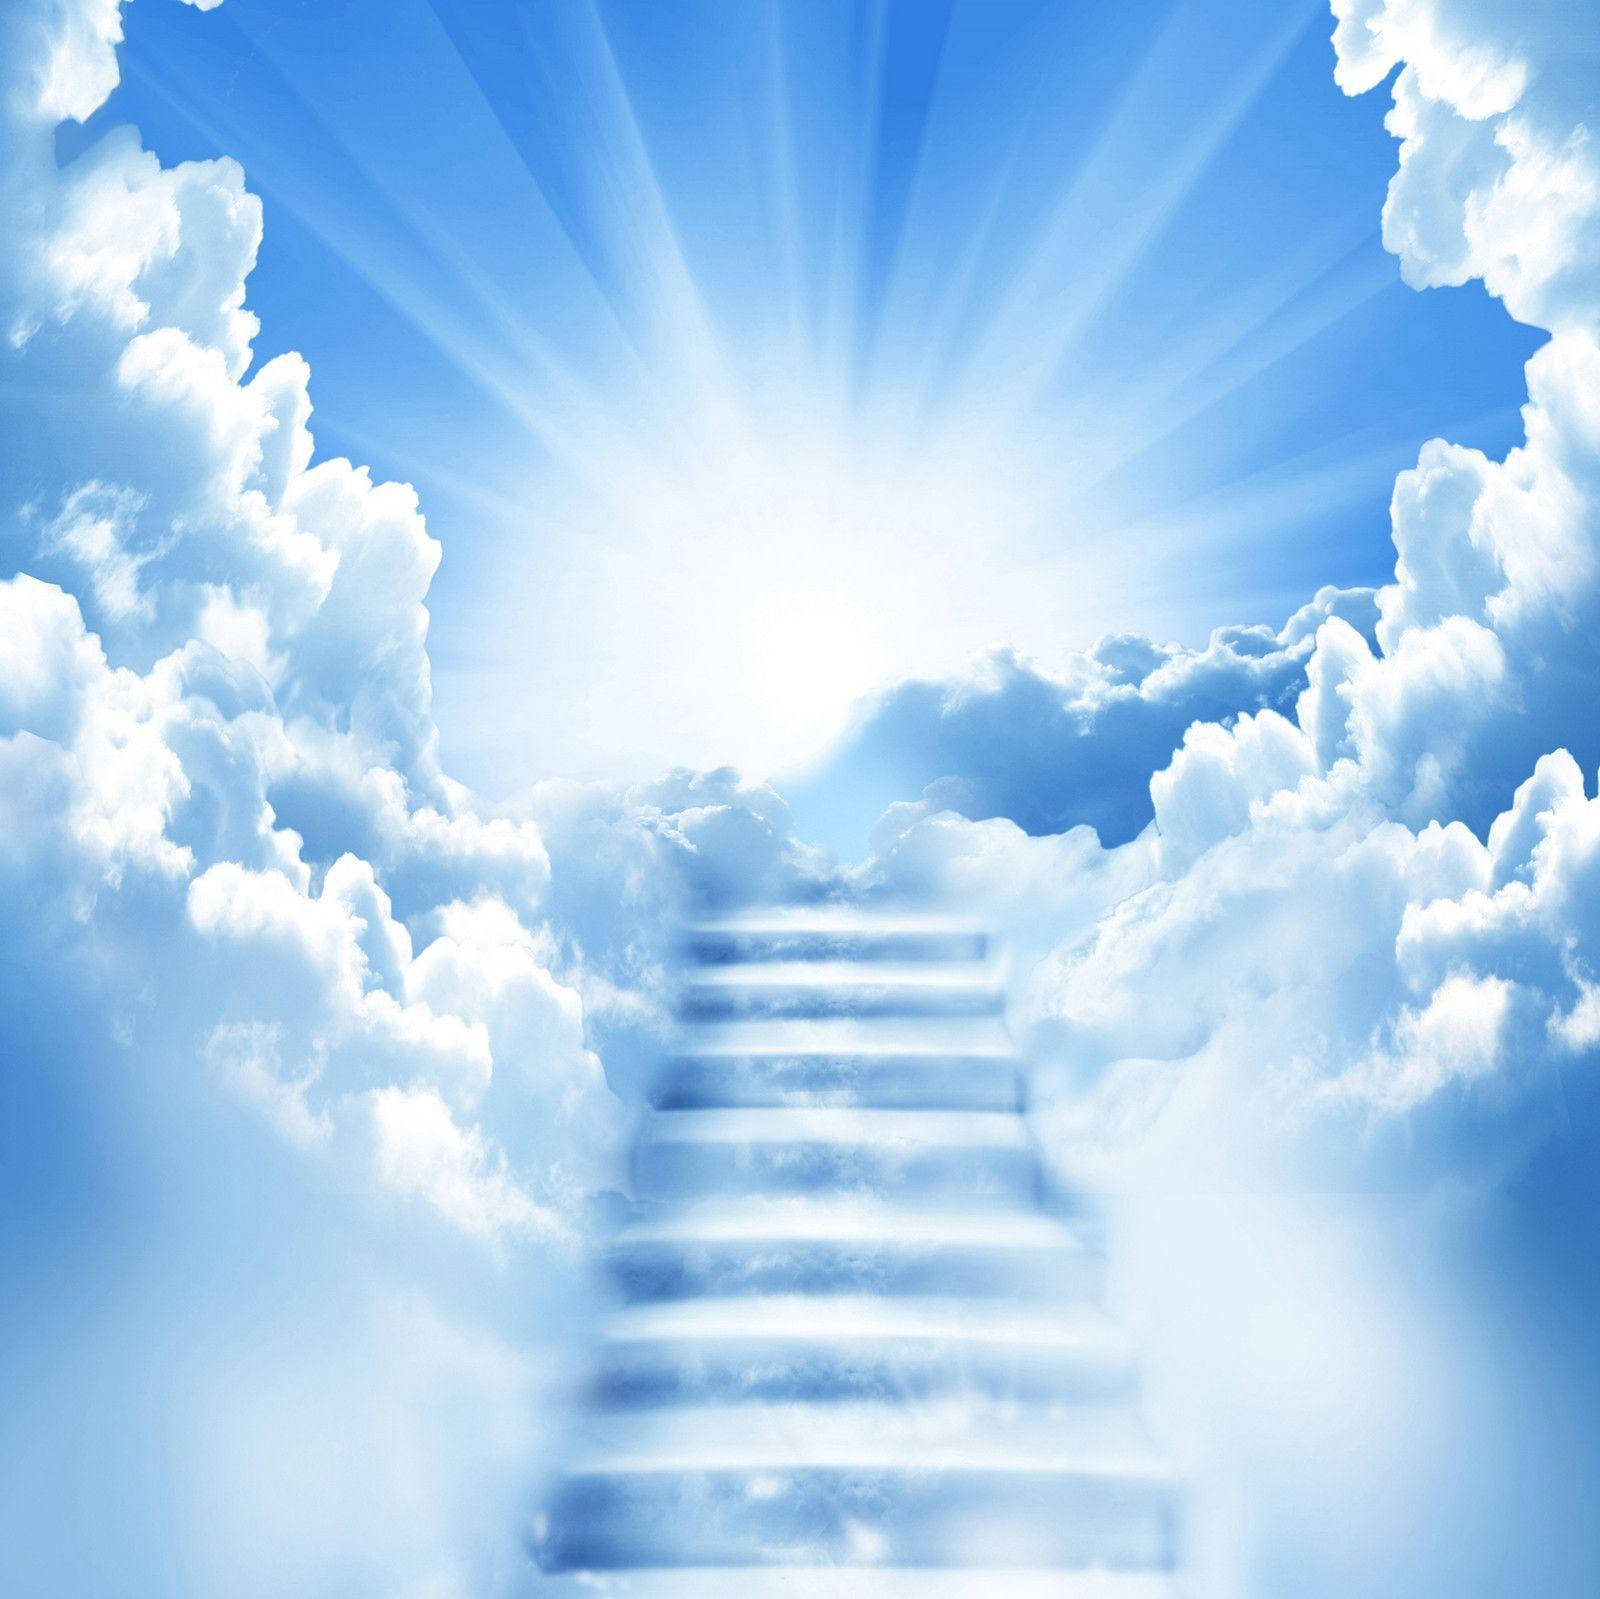 Funeral Blue Sky Stairway